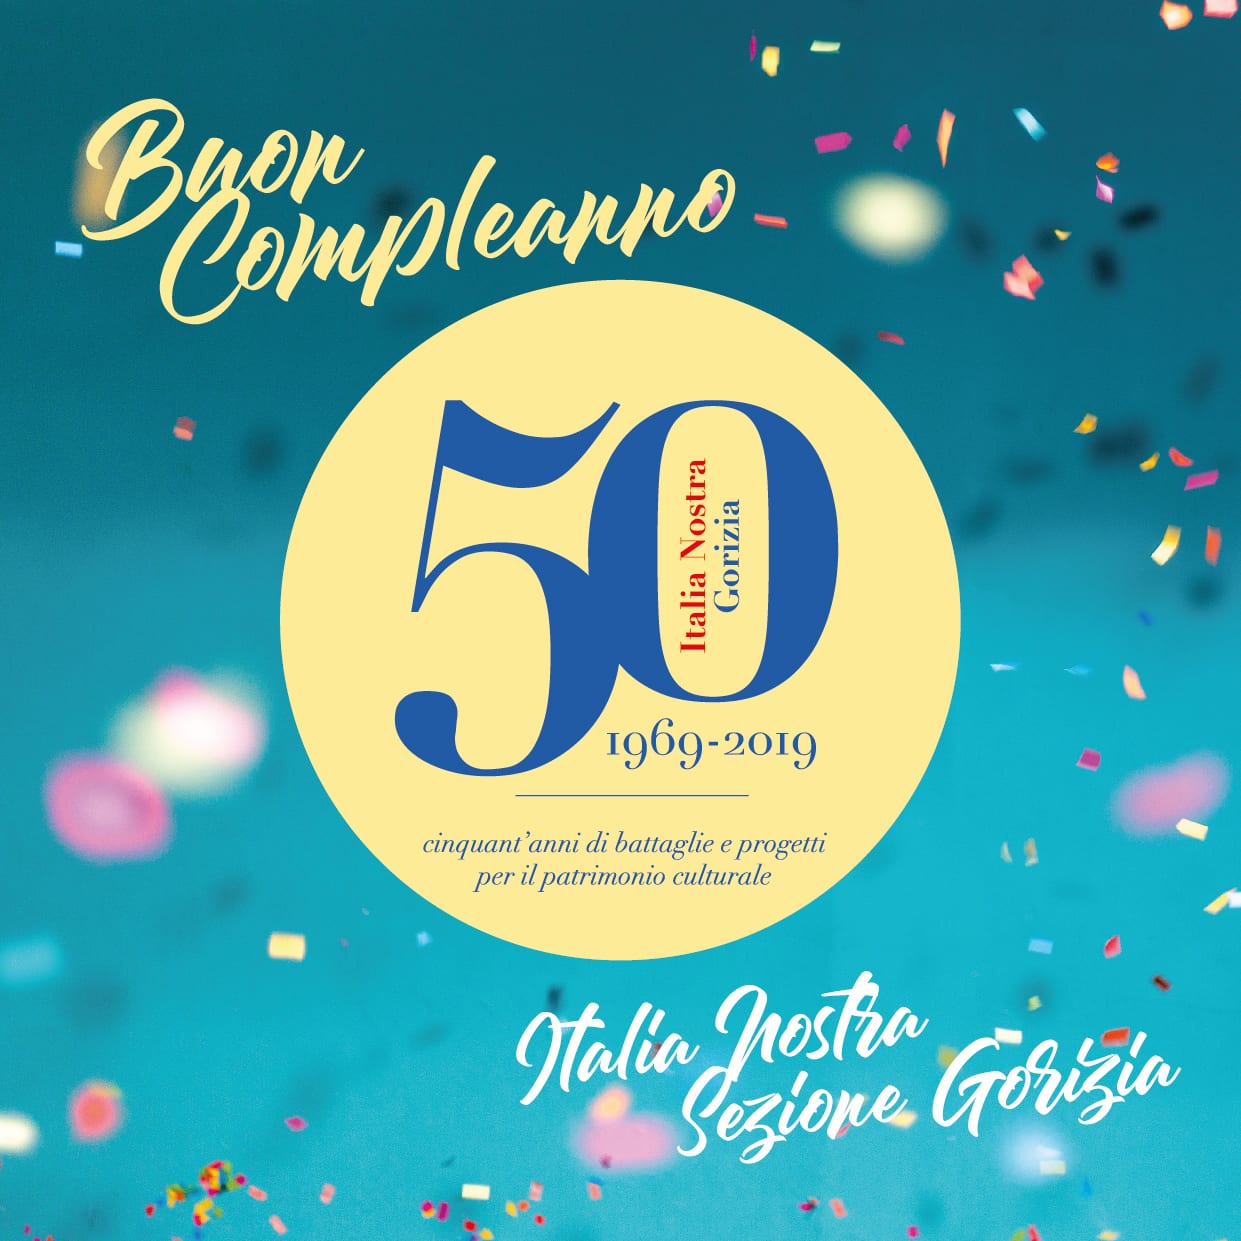 Buon 50esimo “compleanno” alla nostra Sezione di Gorizia!